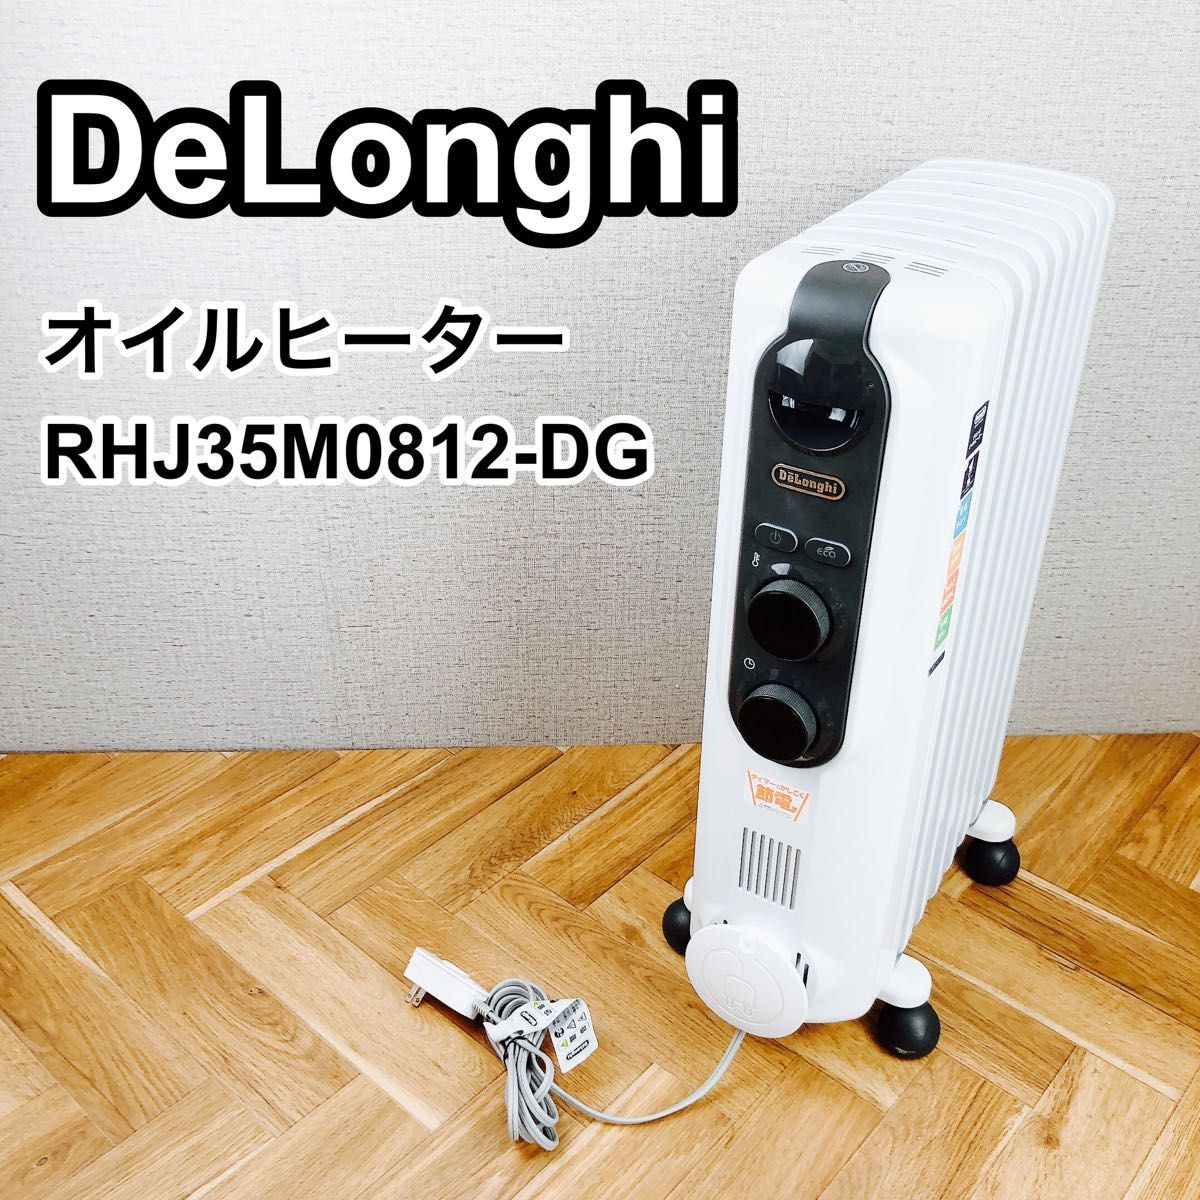 ファッションデザイナー DeLonghi RHJ35M0812-DG デロンギオイルヒーター オイルヒーター